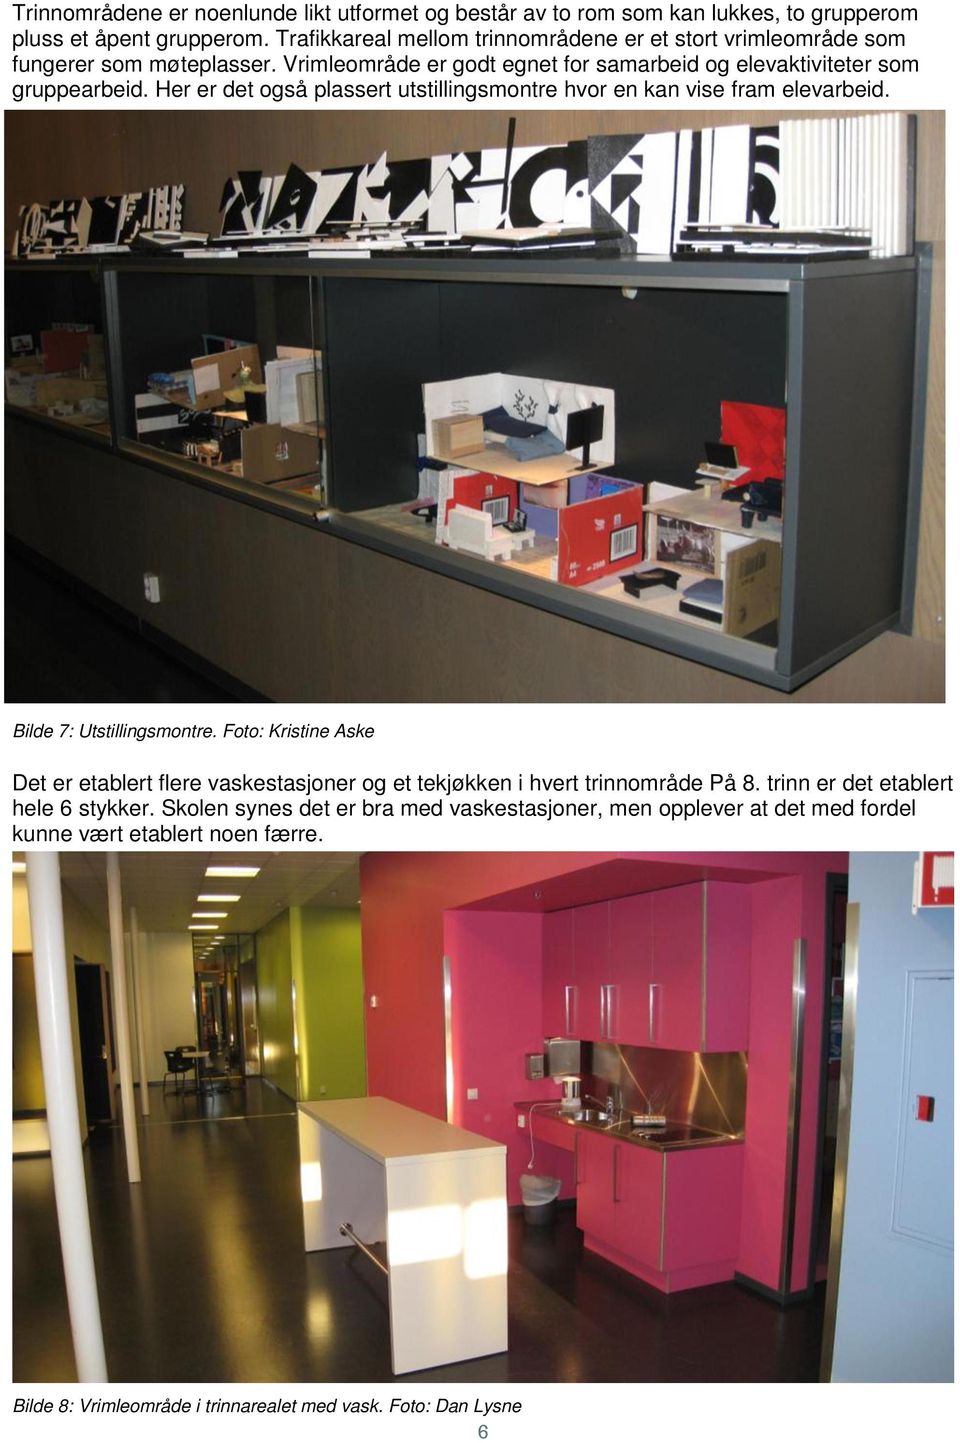 Her er det også plassert utstillingsmontre hvor en kan vise fram elevarbeid. Bilde 7: Utstillingsmontre.